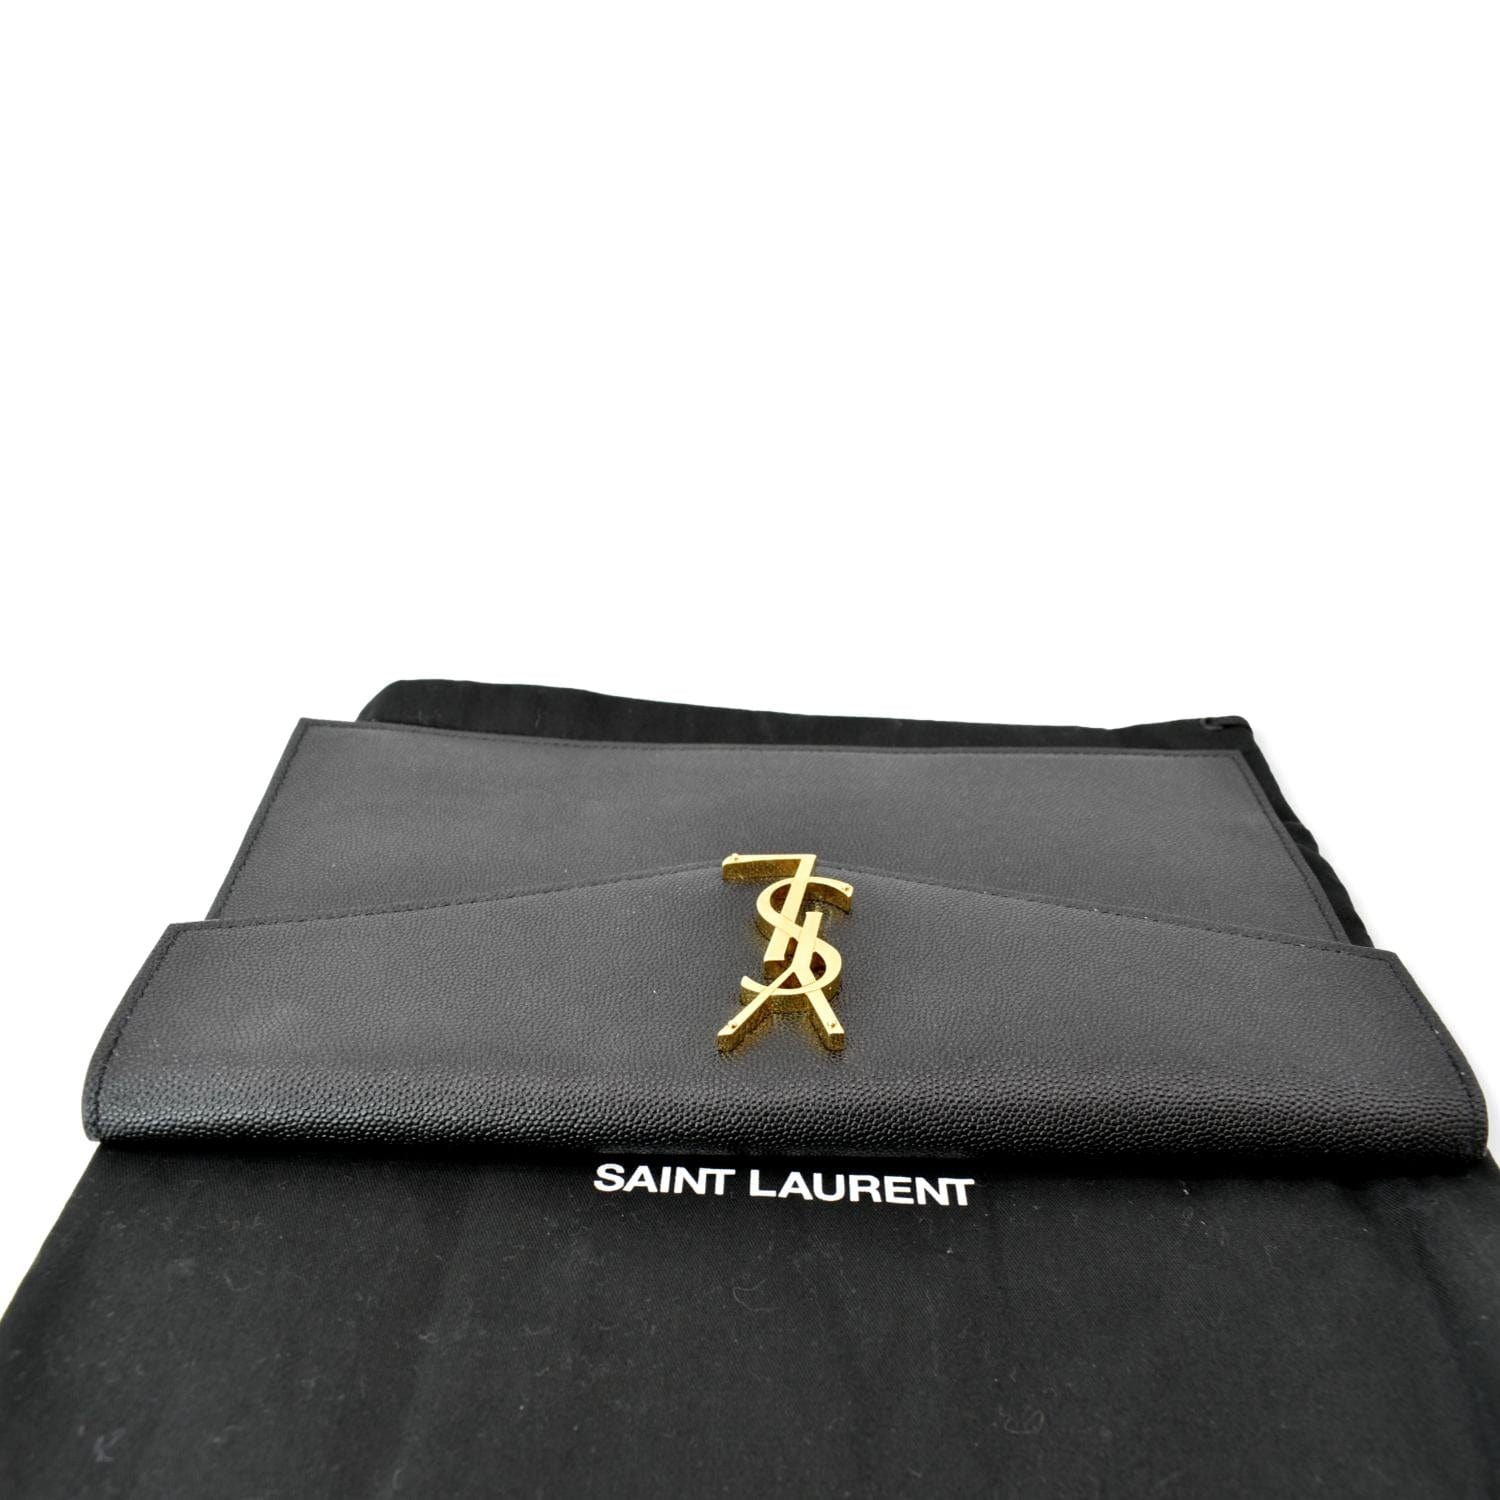 Saint Laurent Uptown Leather Clutch